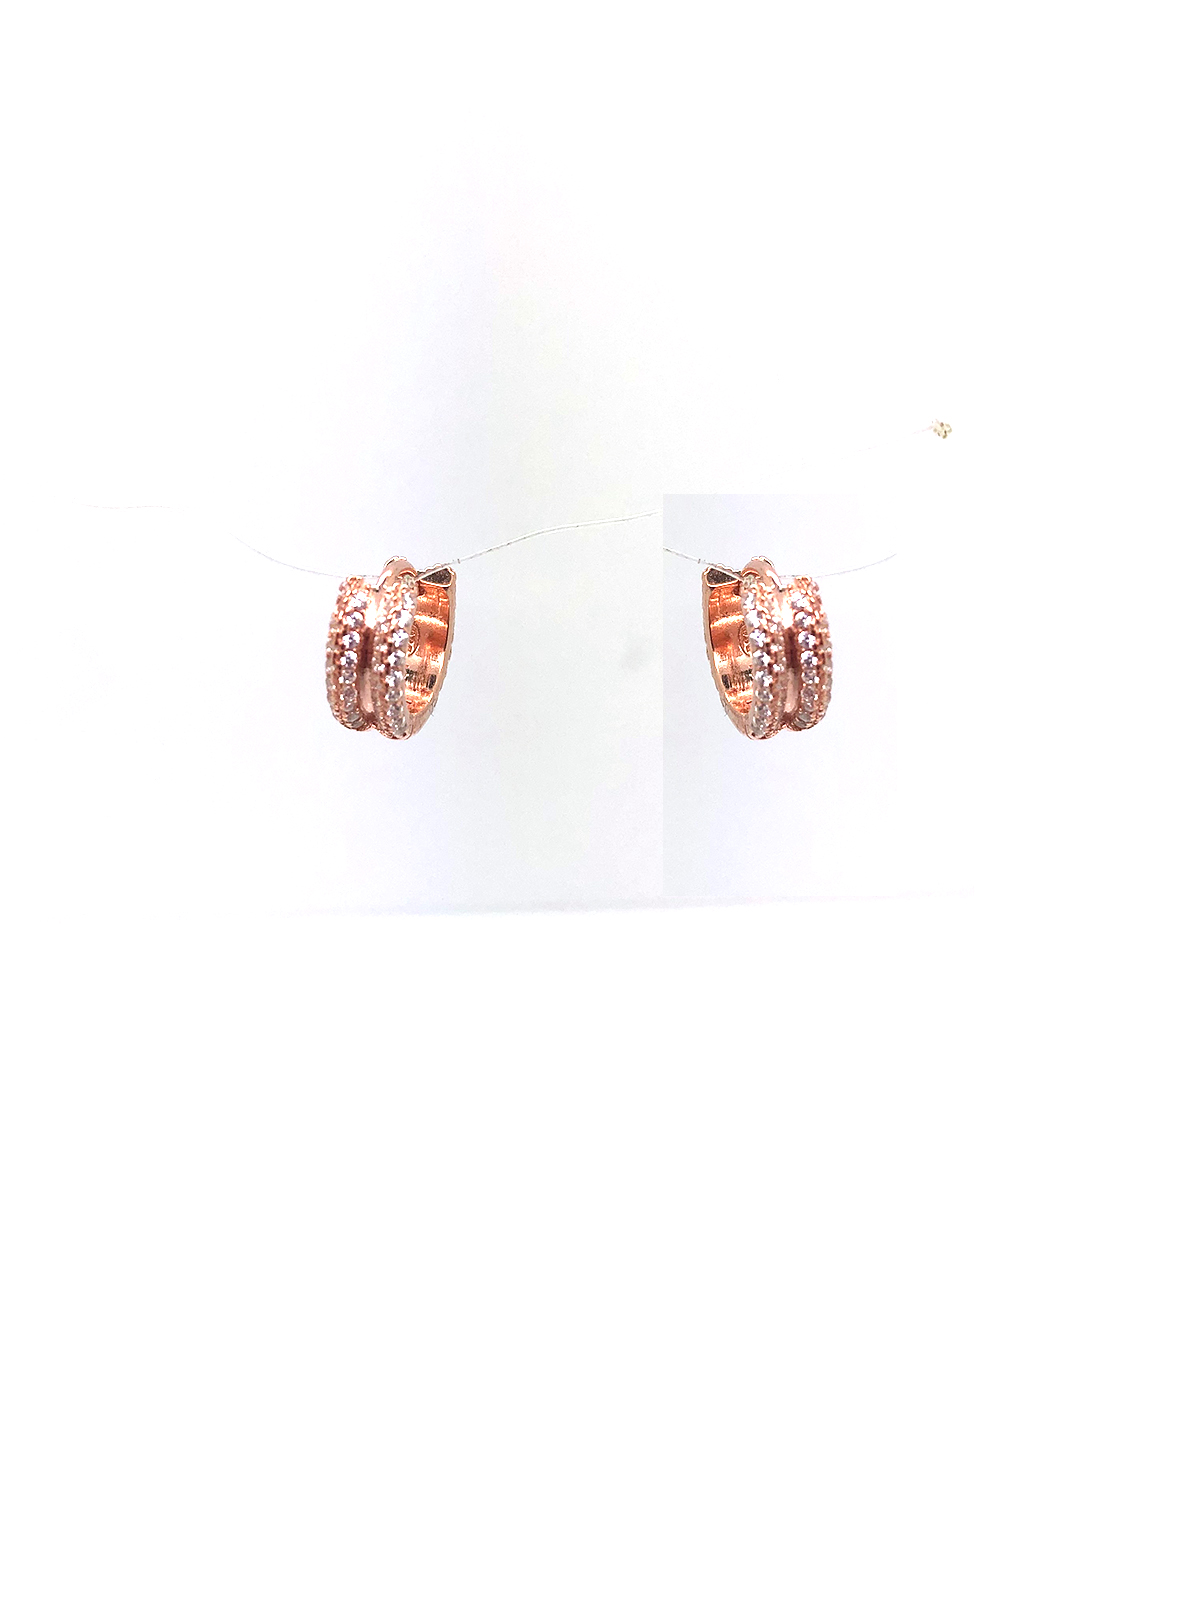 orecchino cerchio largo con fila di zirconi laterali in entrambi i lati tutto in argento 925 bagnato in oro rosa